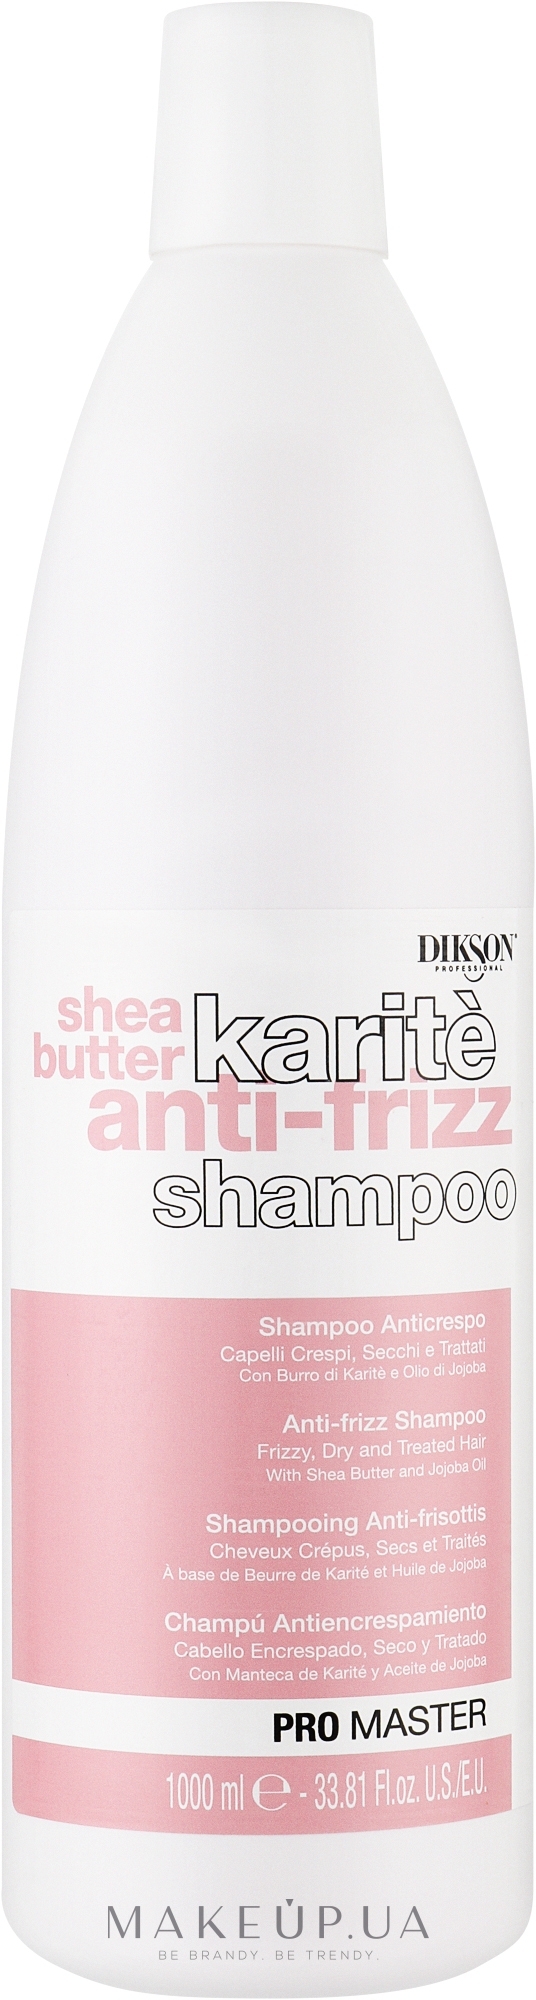 Шампунь для сухого та пошкодженого волосся - Dikson Shea Butter Karite Anti-Frizz Shampoo — фото 1000ml